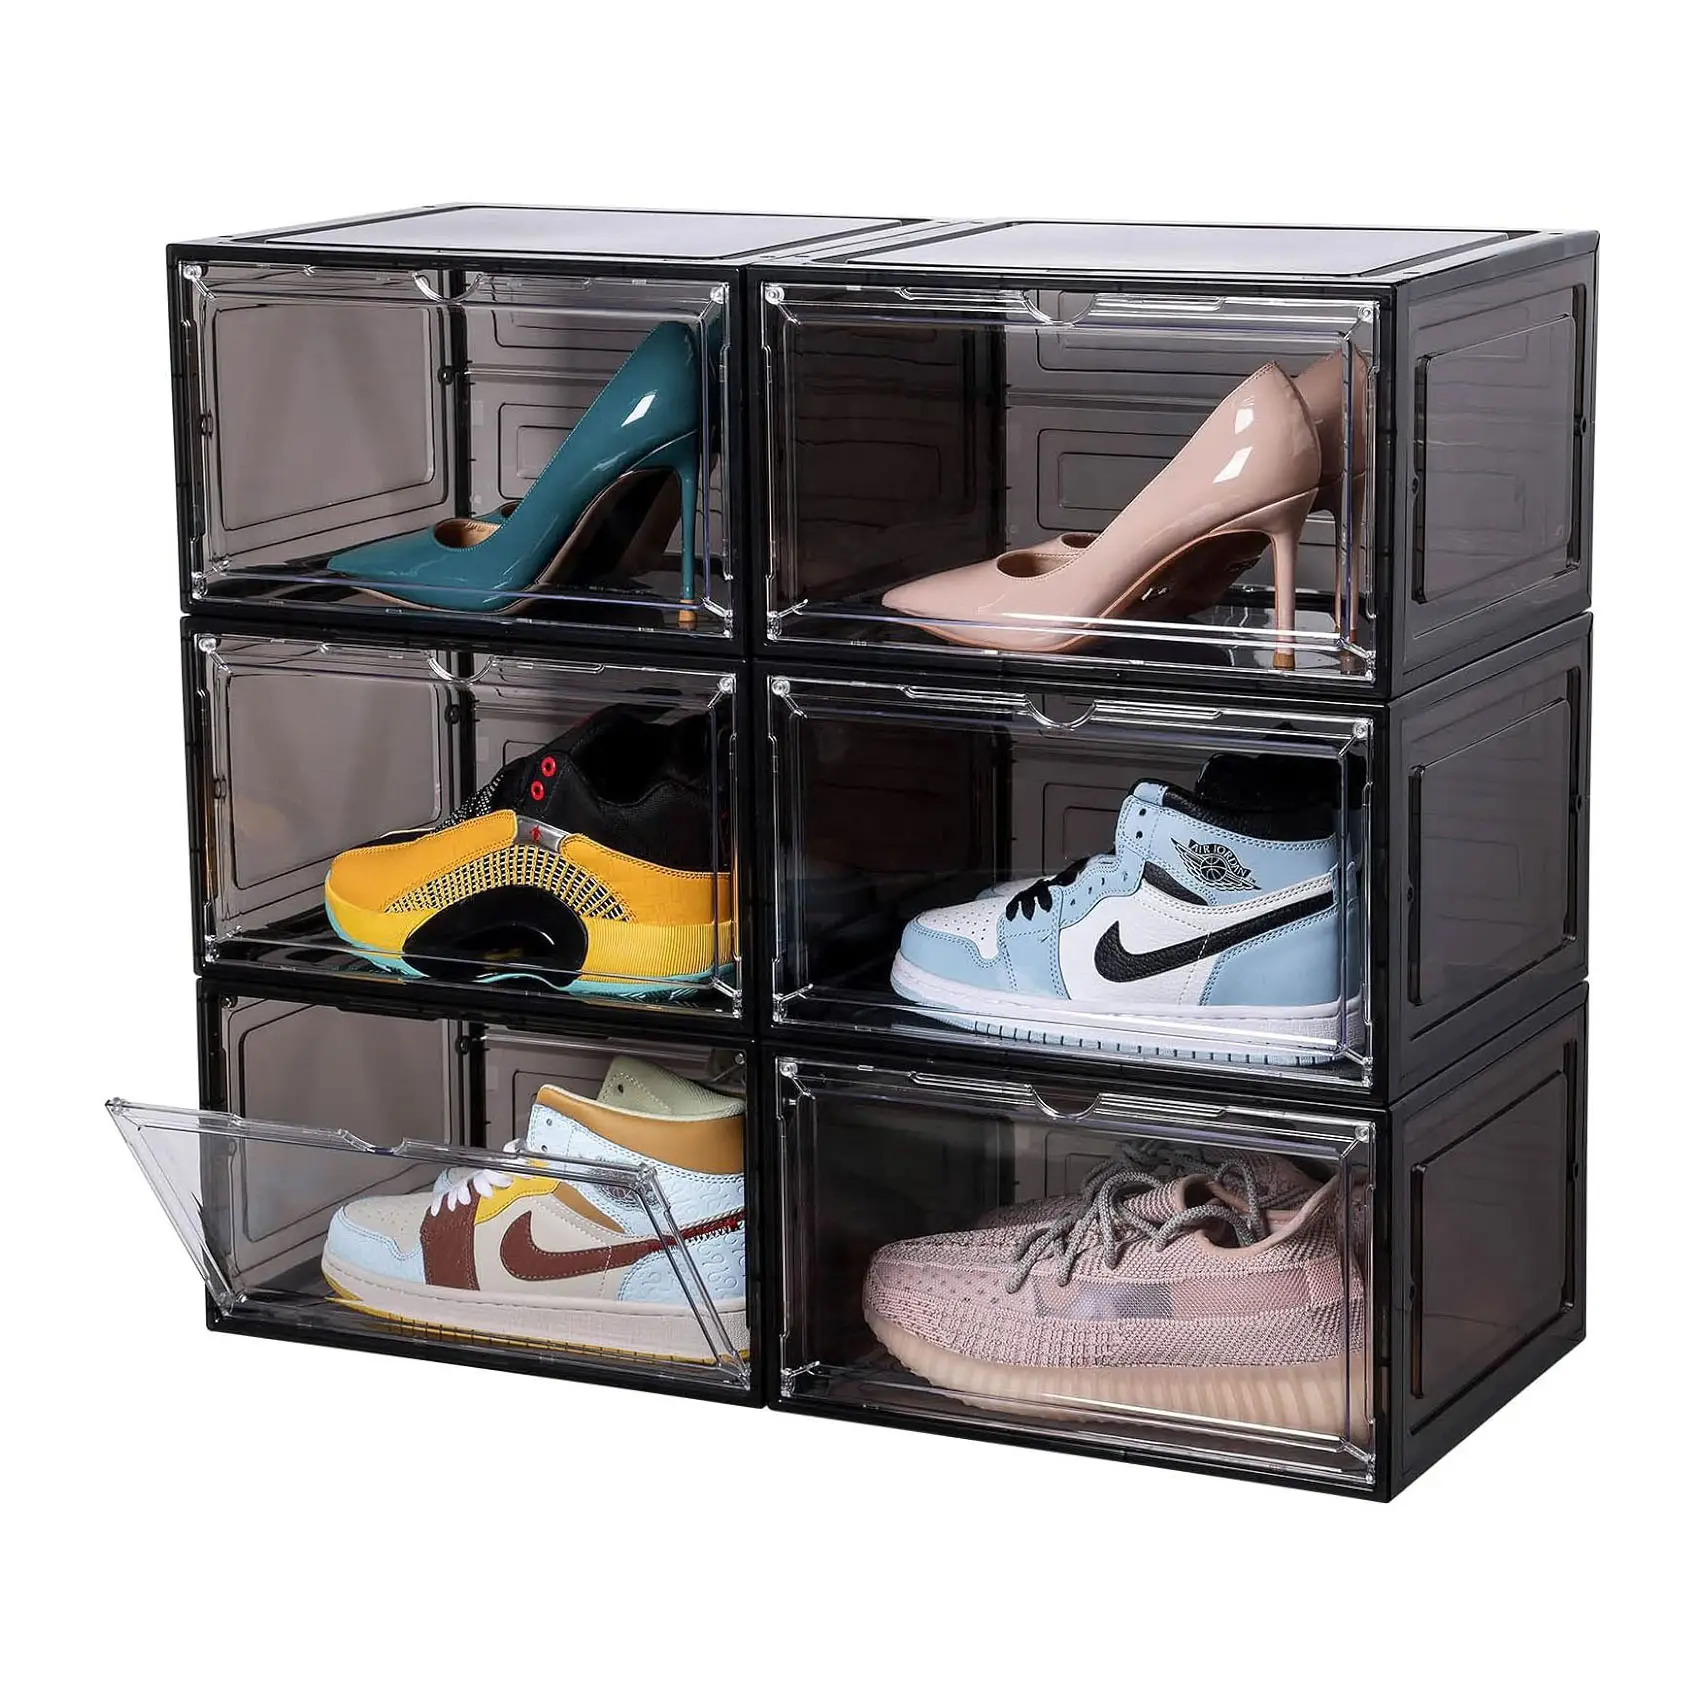 चुंबक एयर जॉर्डन जूते बॉक्स के साथ महिलाओं के जूते बॉक्स डिजाइन जूता बॉक्स